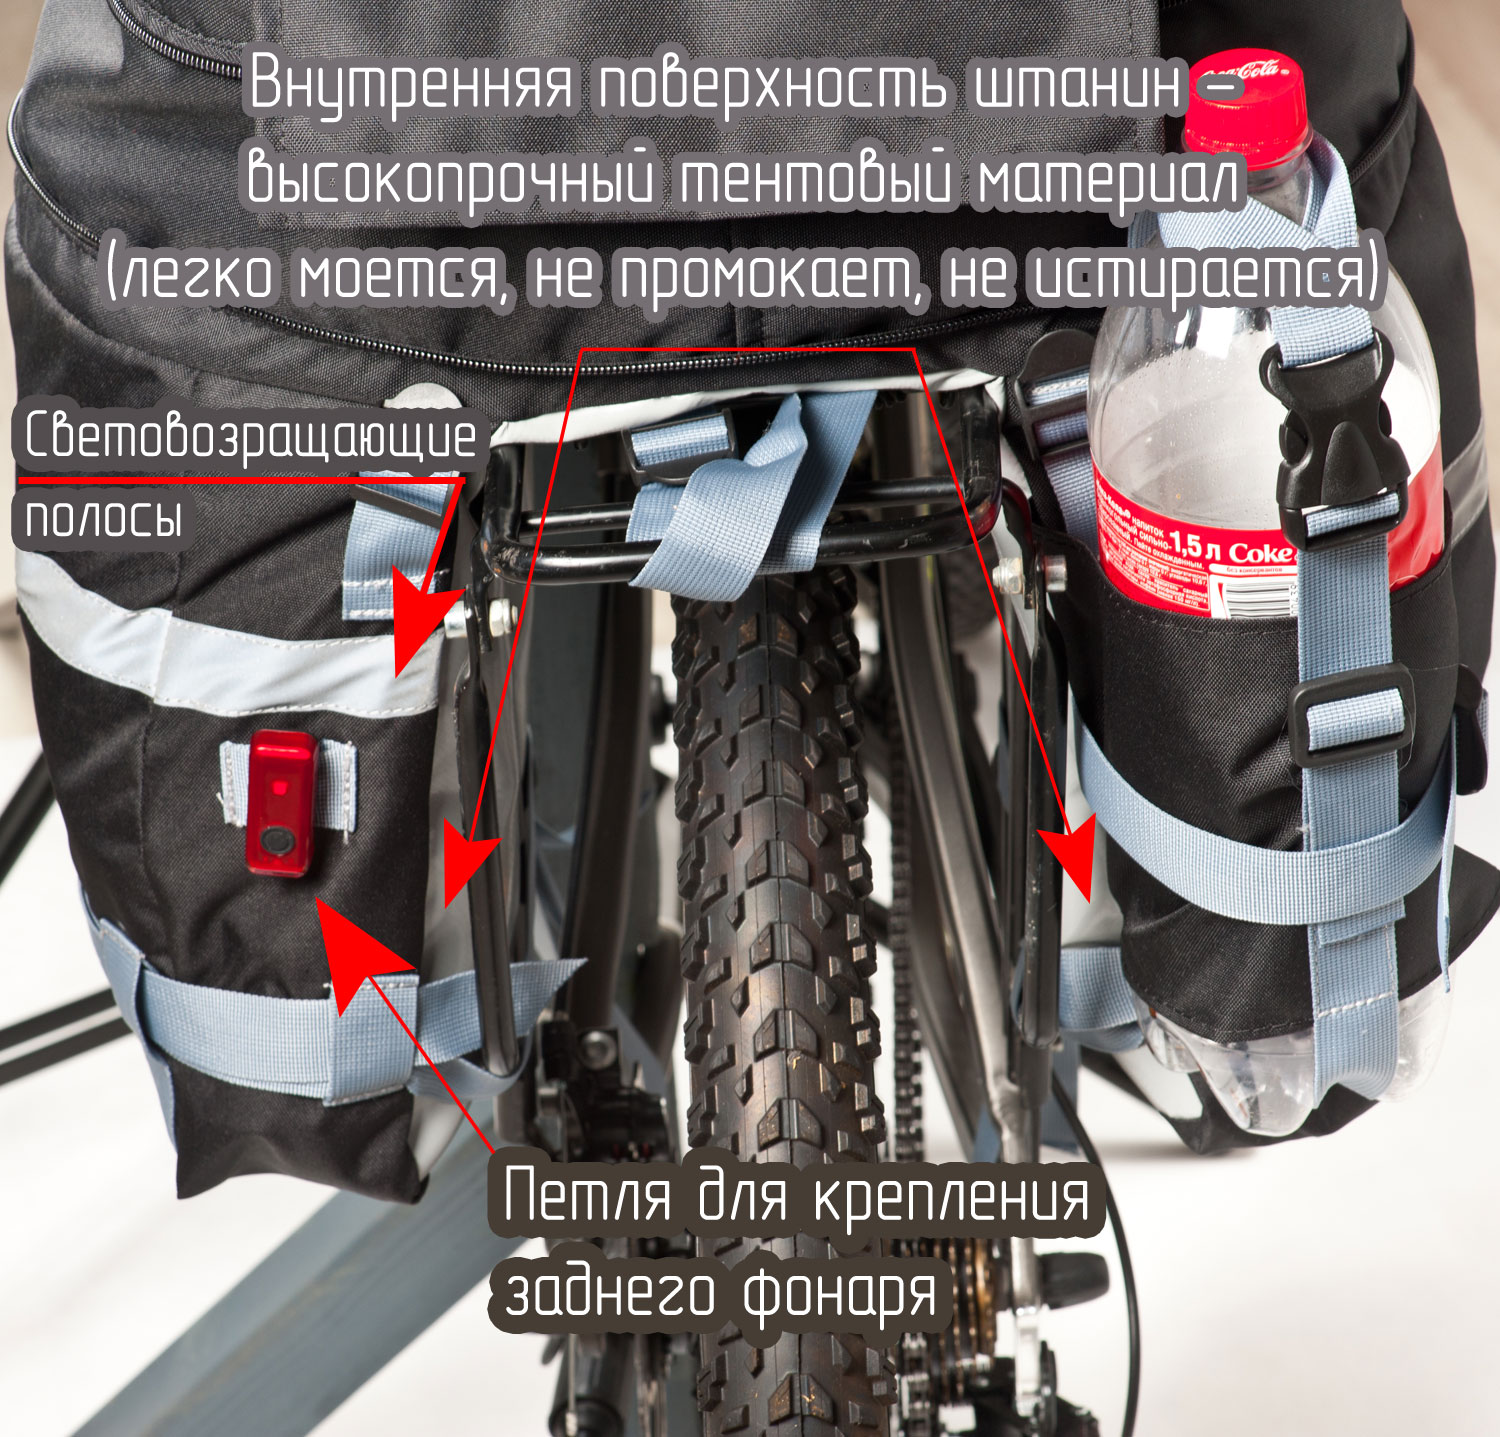 Конструкция велорюкзака (велоштанов) с элементами безопасности